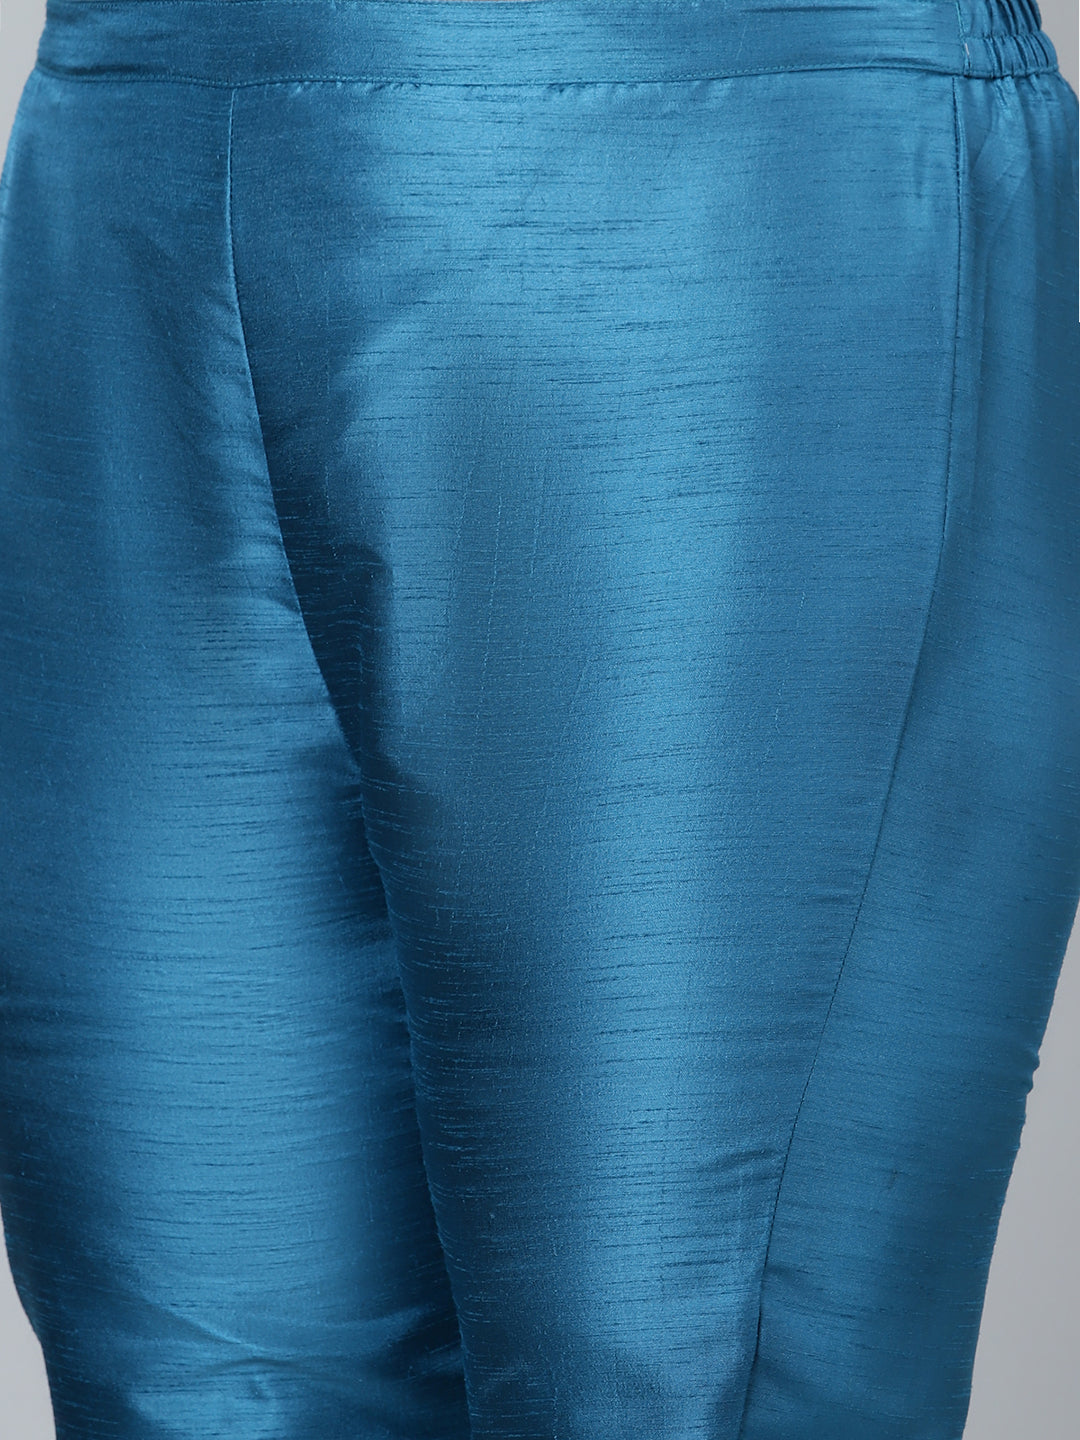 Women's Blue Poly Silk Kurta and Pant Set by Ziyaa- (2pcs set)